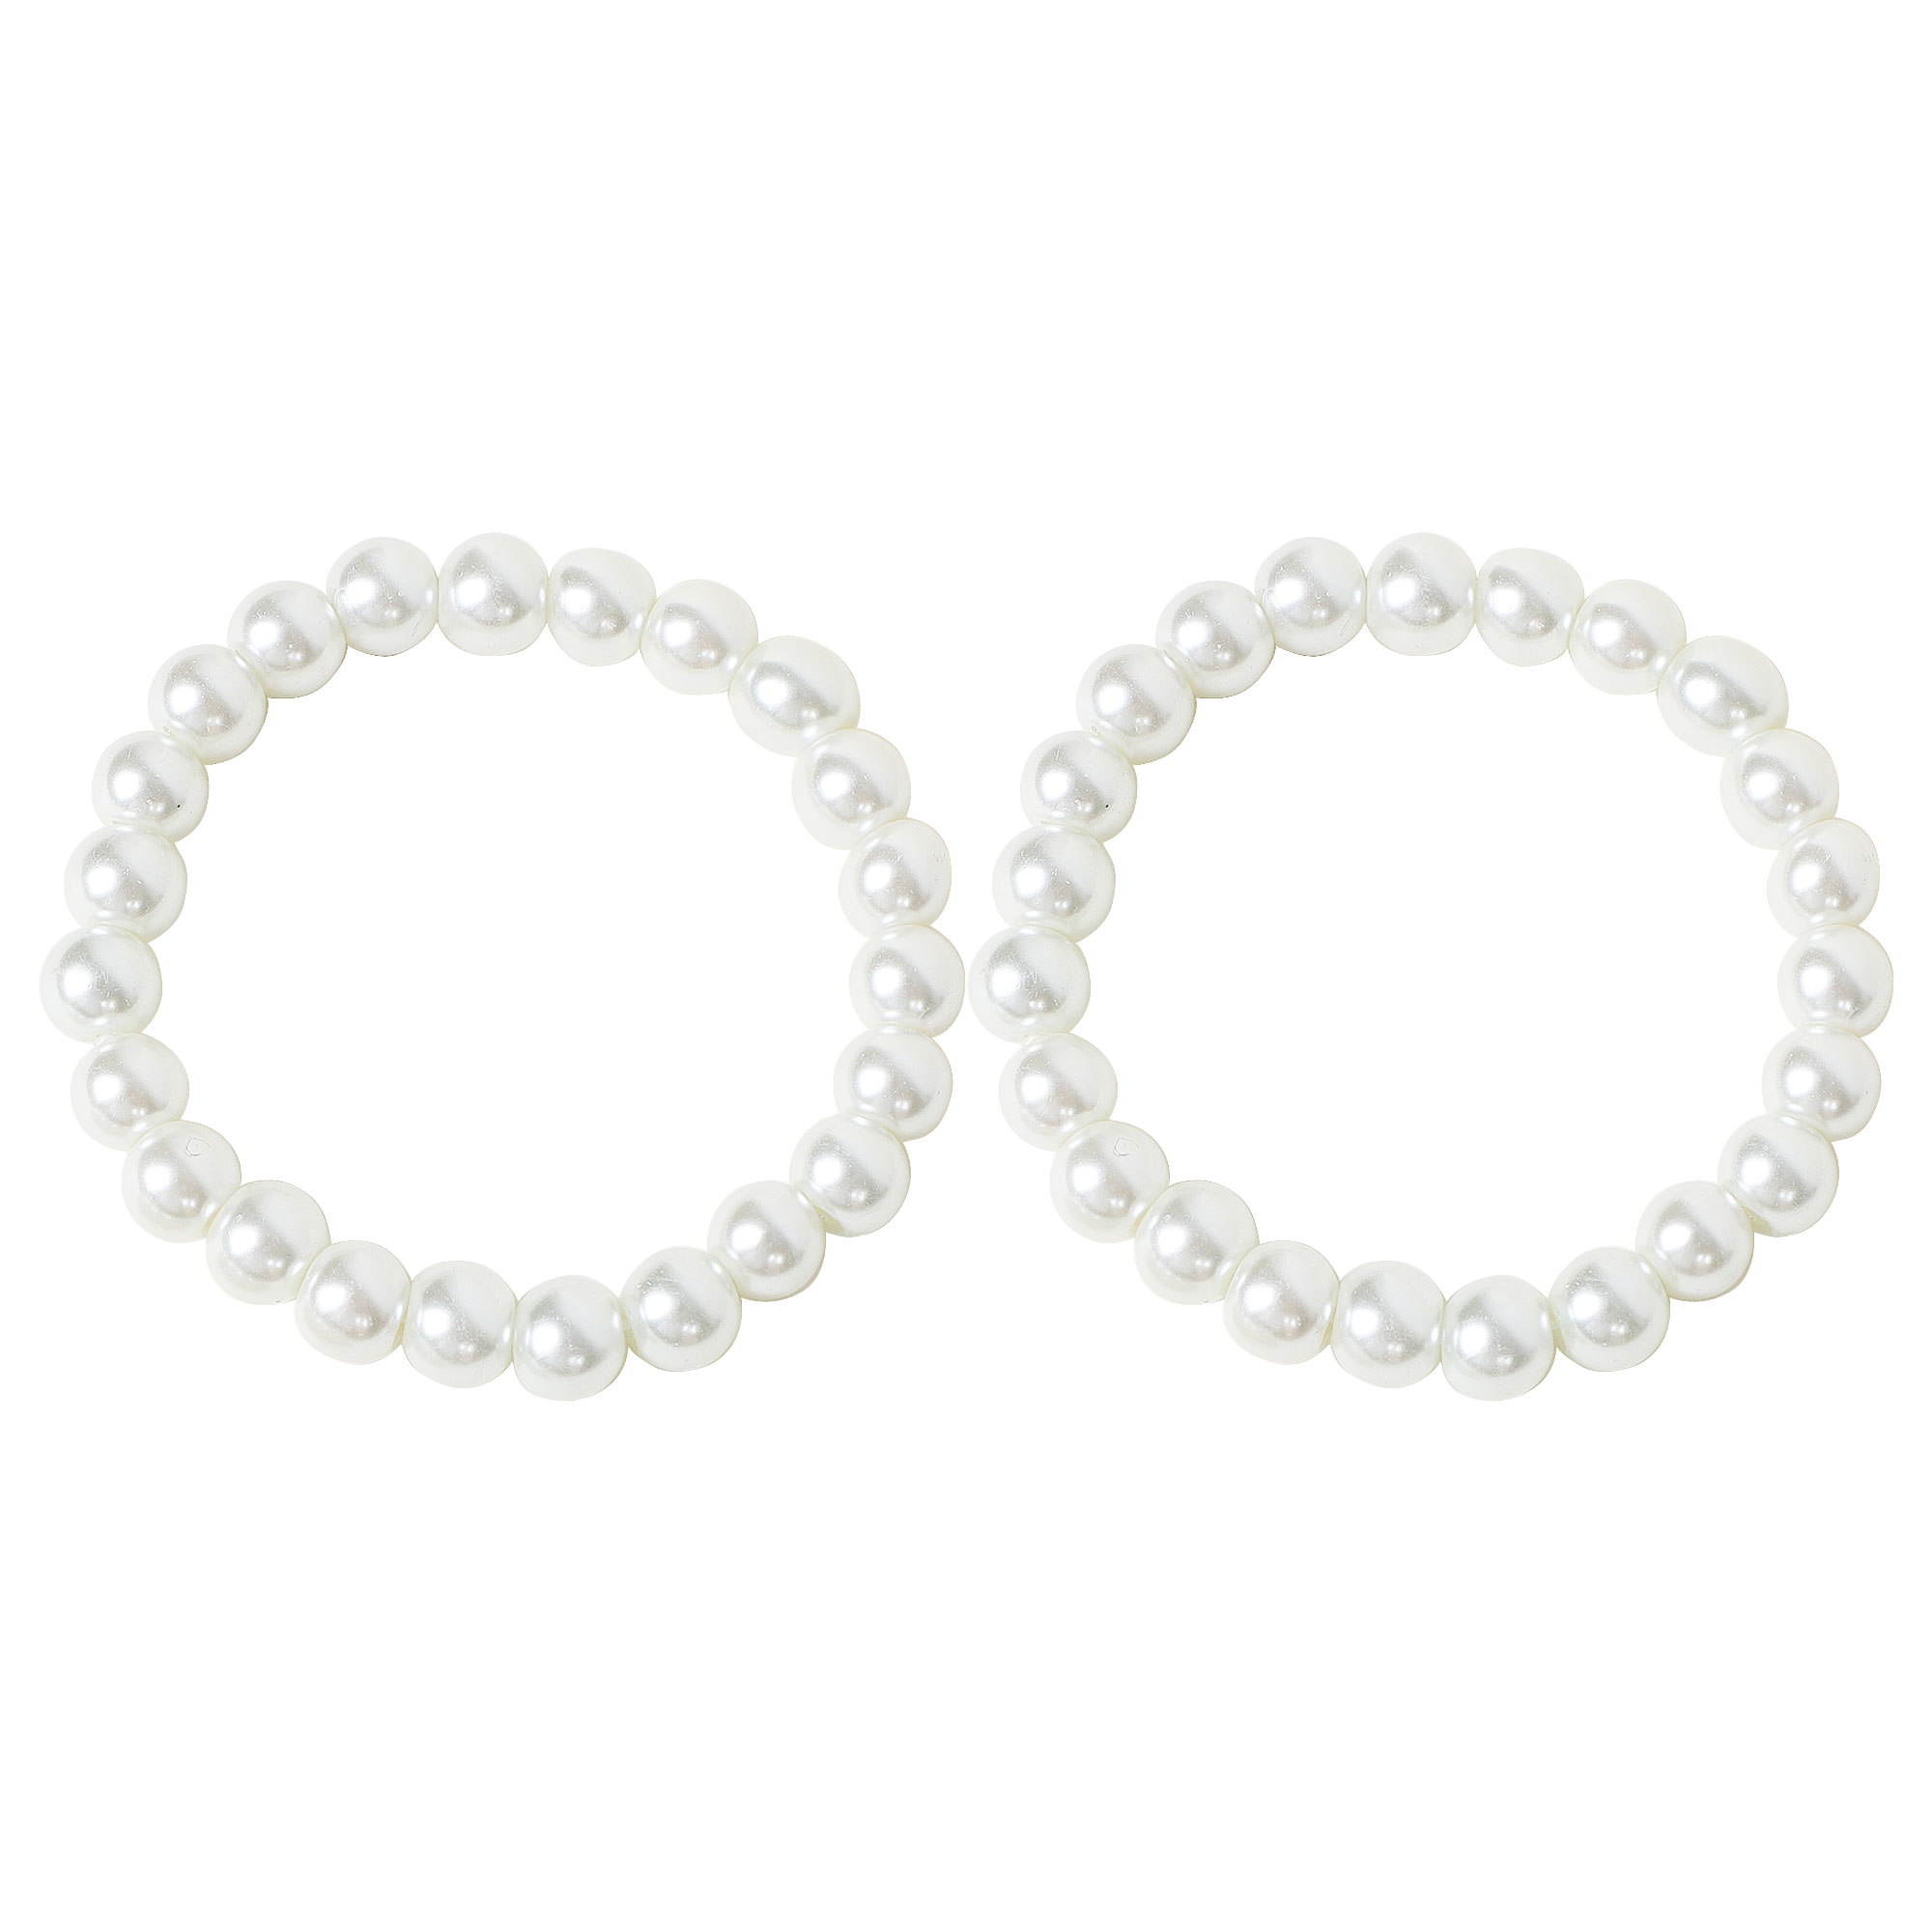 Unique Bargains 2 Pcs White Faux Pearls Beaded Elastic Bracelet Wrist Ornament for Women